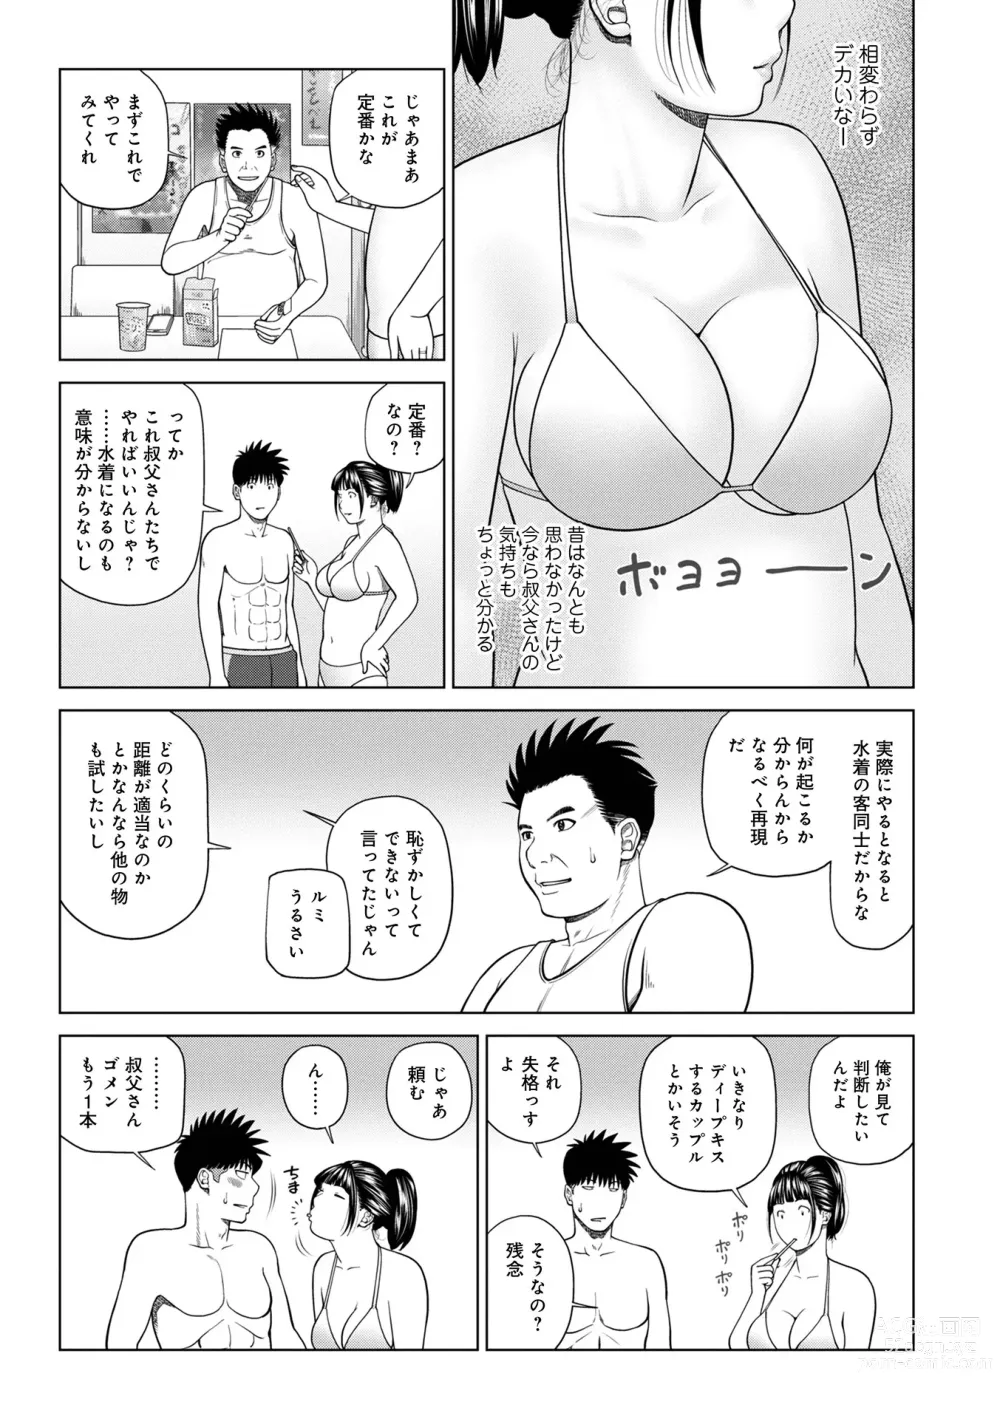 Page 7 of manga WEB Ban COMIC Gekiyaba! Vol. 160